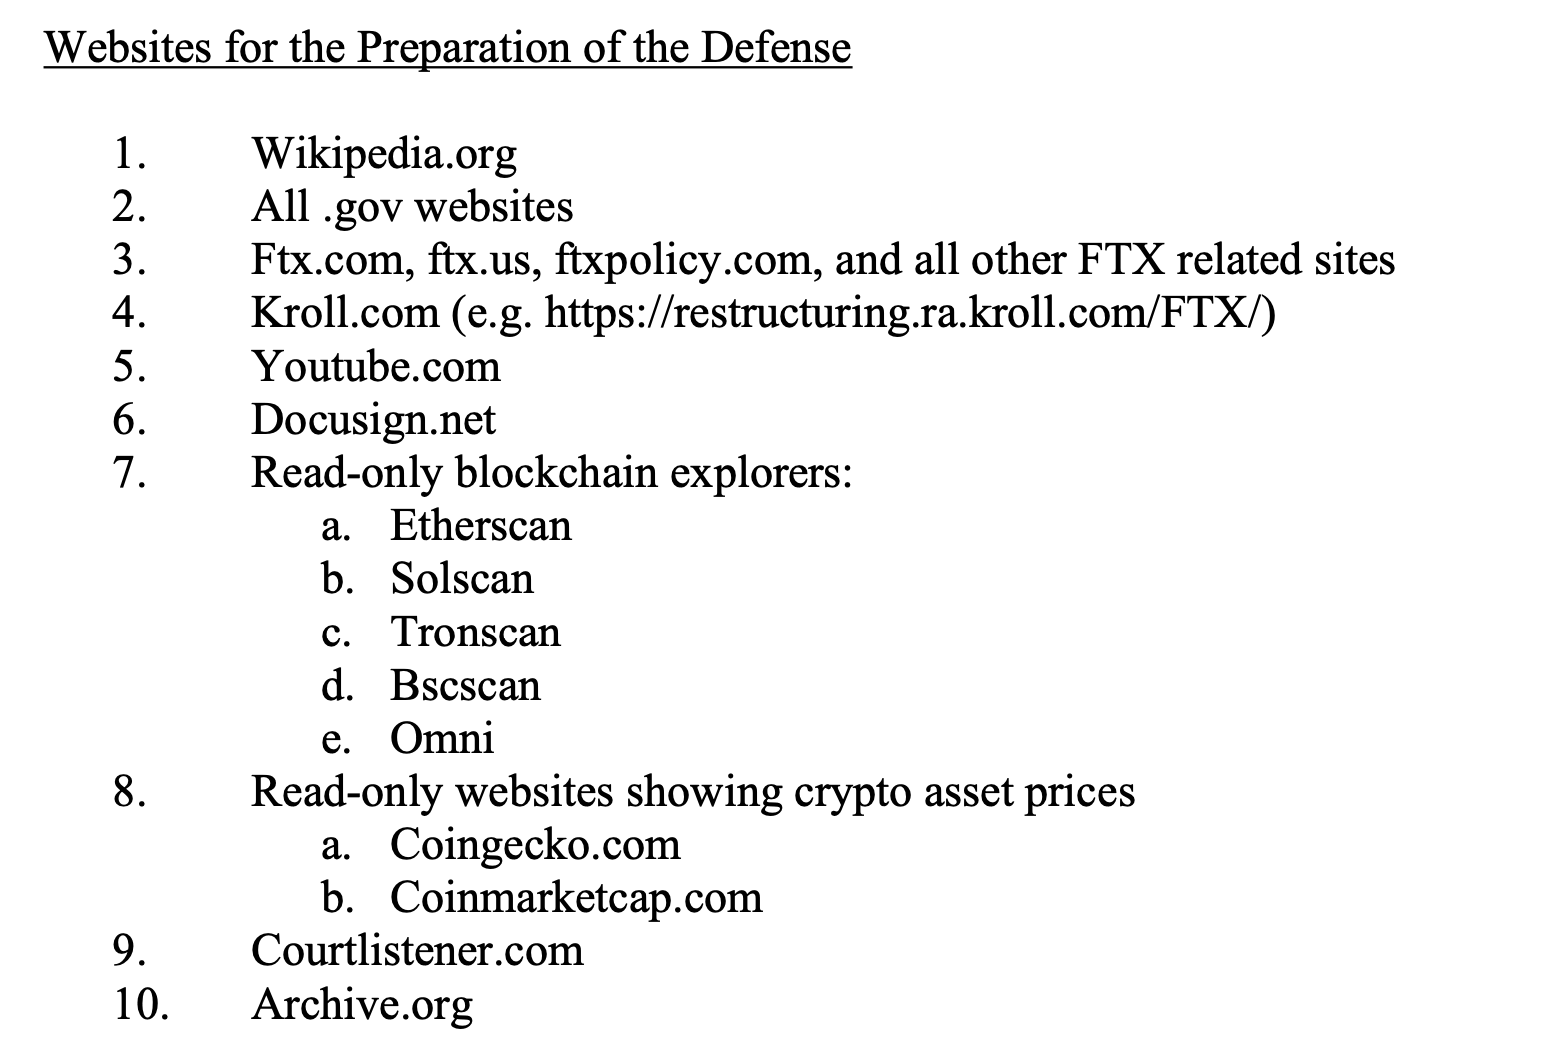 Что происходит с основателем криптобиржи FTX. Список сайтов для подготовки к защите по делу для основателя криптобиржи FTX Сэма Банкмана-Фрида. Фото.